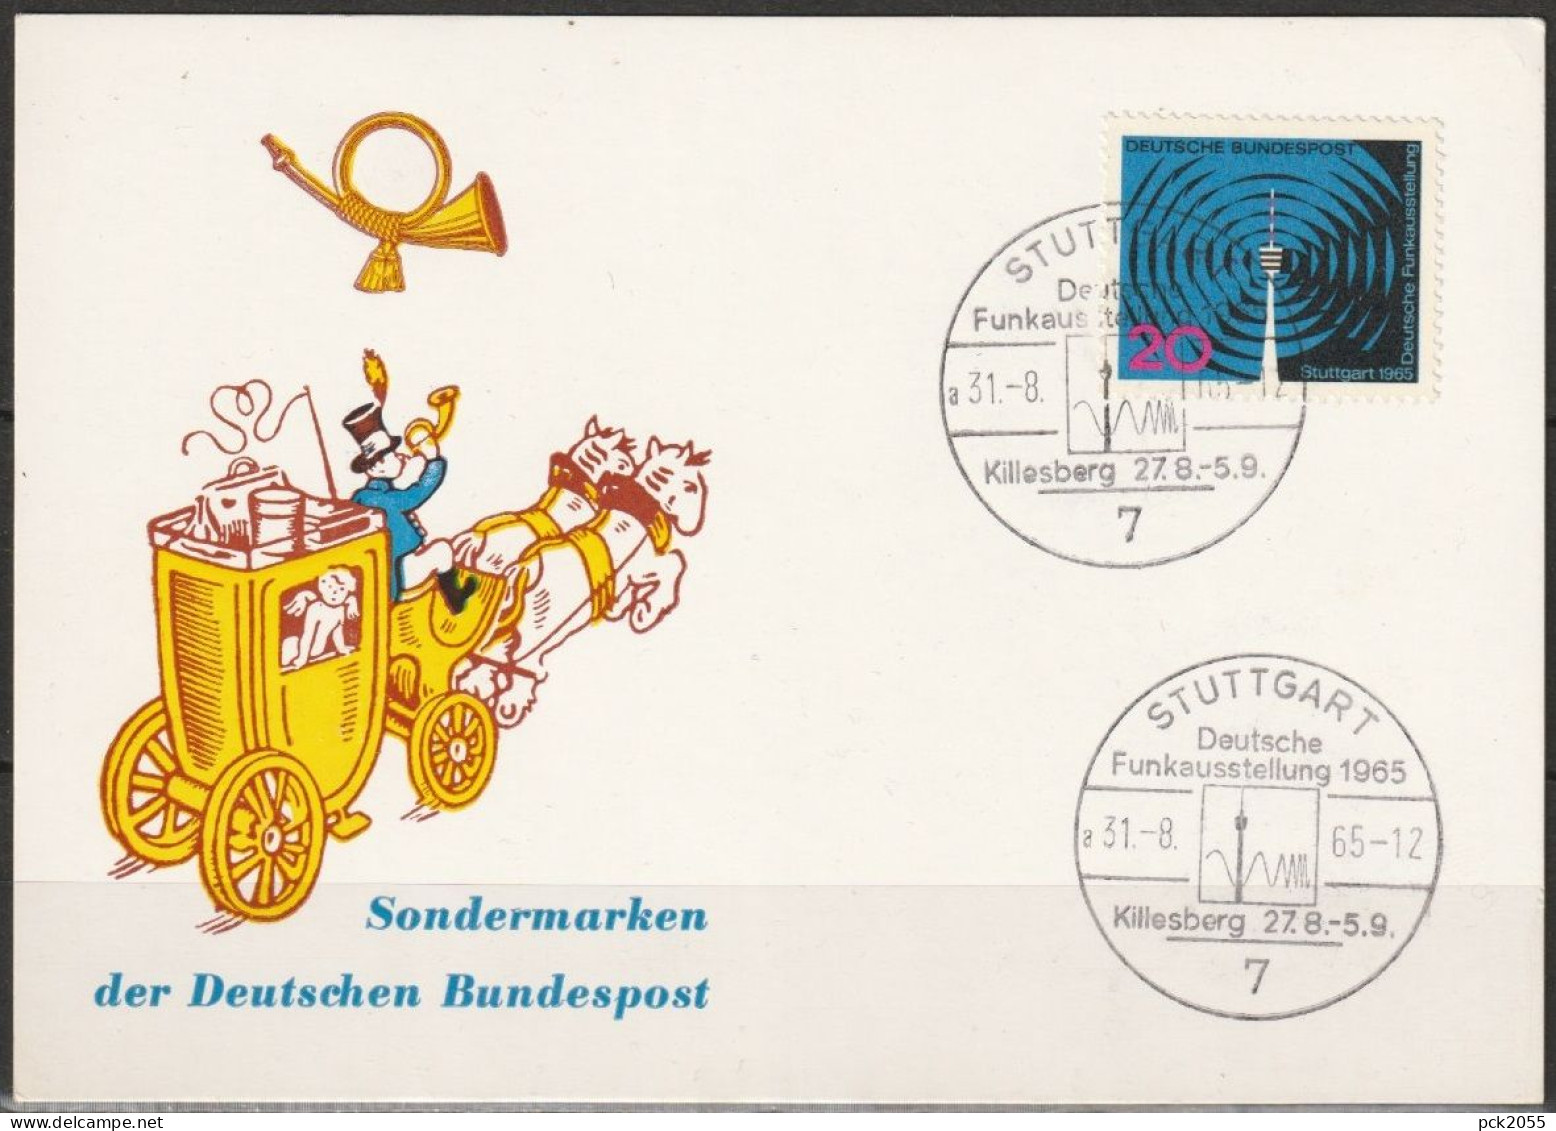 BRD 1965 Nr.481 Deutsche Funkausstellung Stuttgart SOST. Stuttgart  31.8.1965 ( D 4151) - Covers & Documents